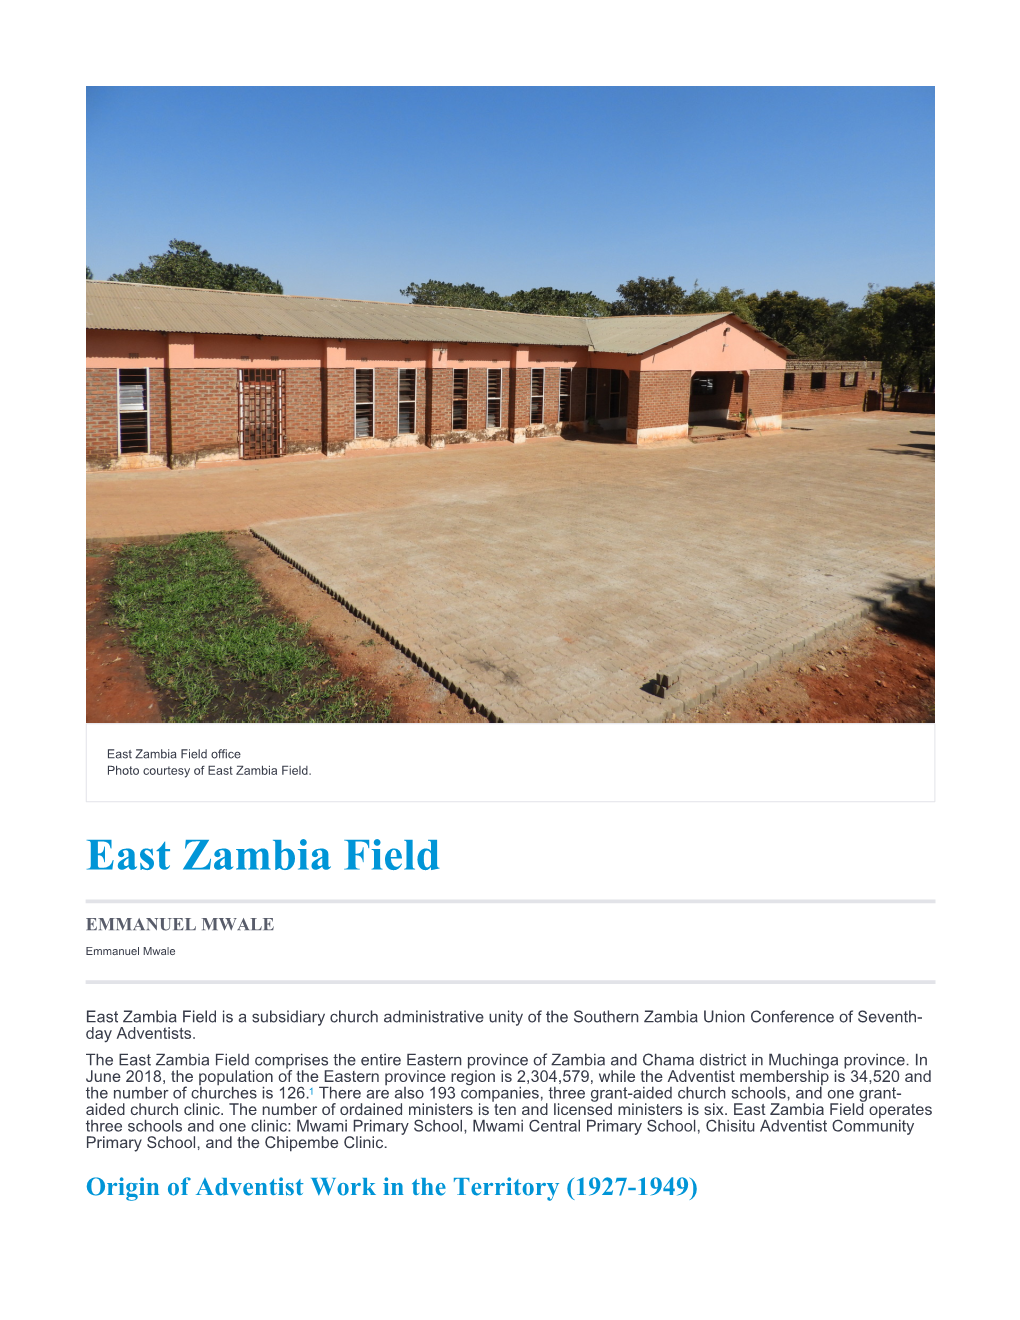 East Zambia Field Office Photo Courtesy of East Zambia Field